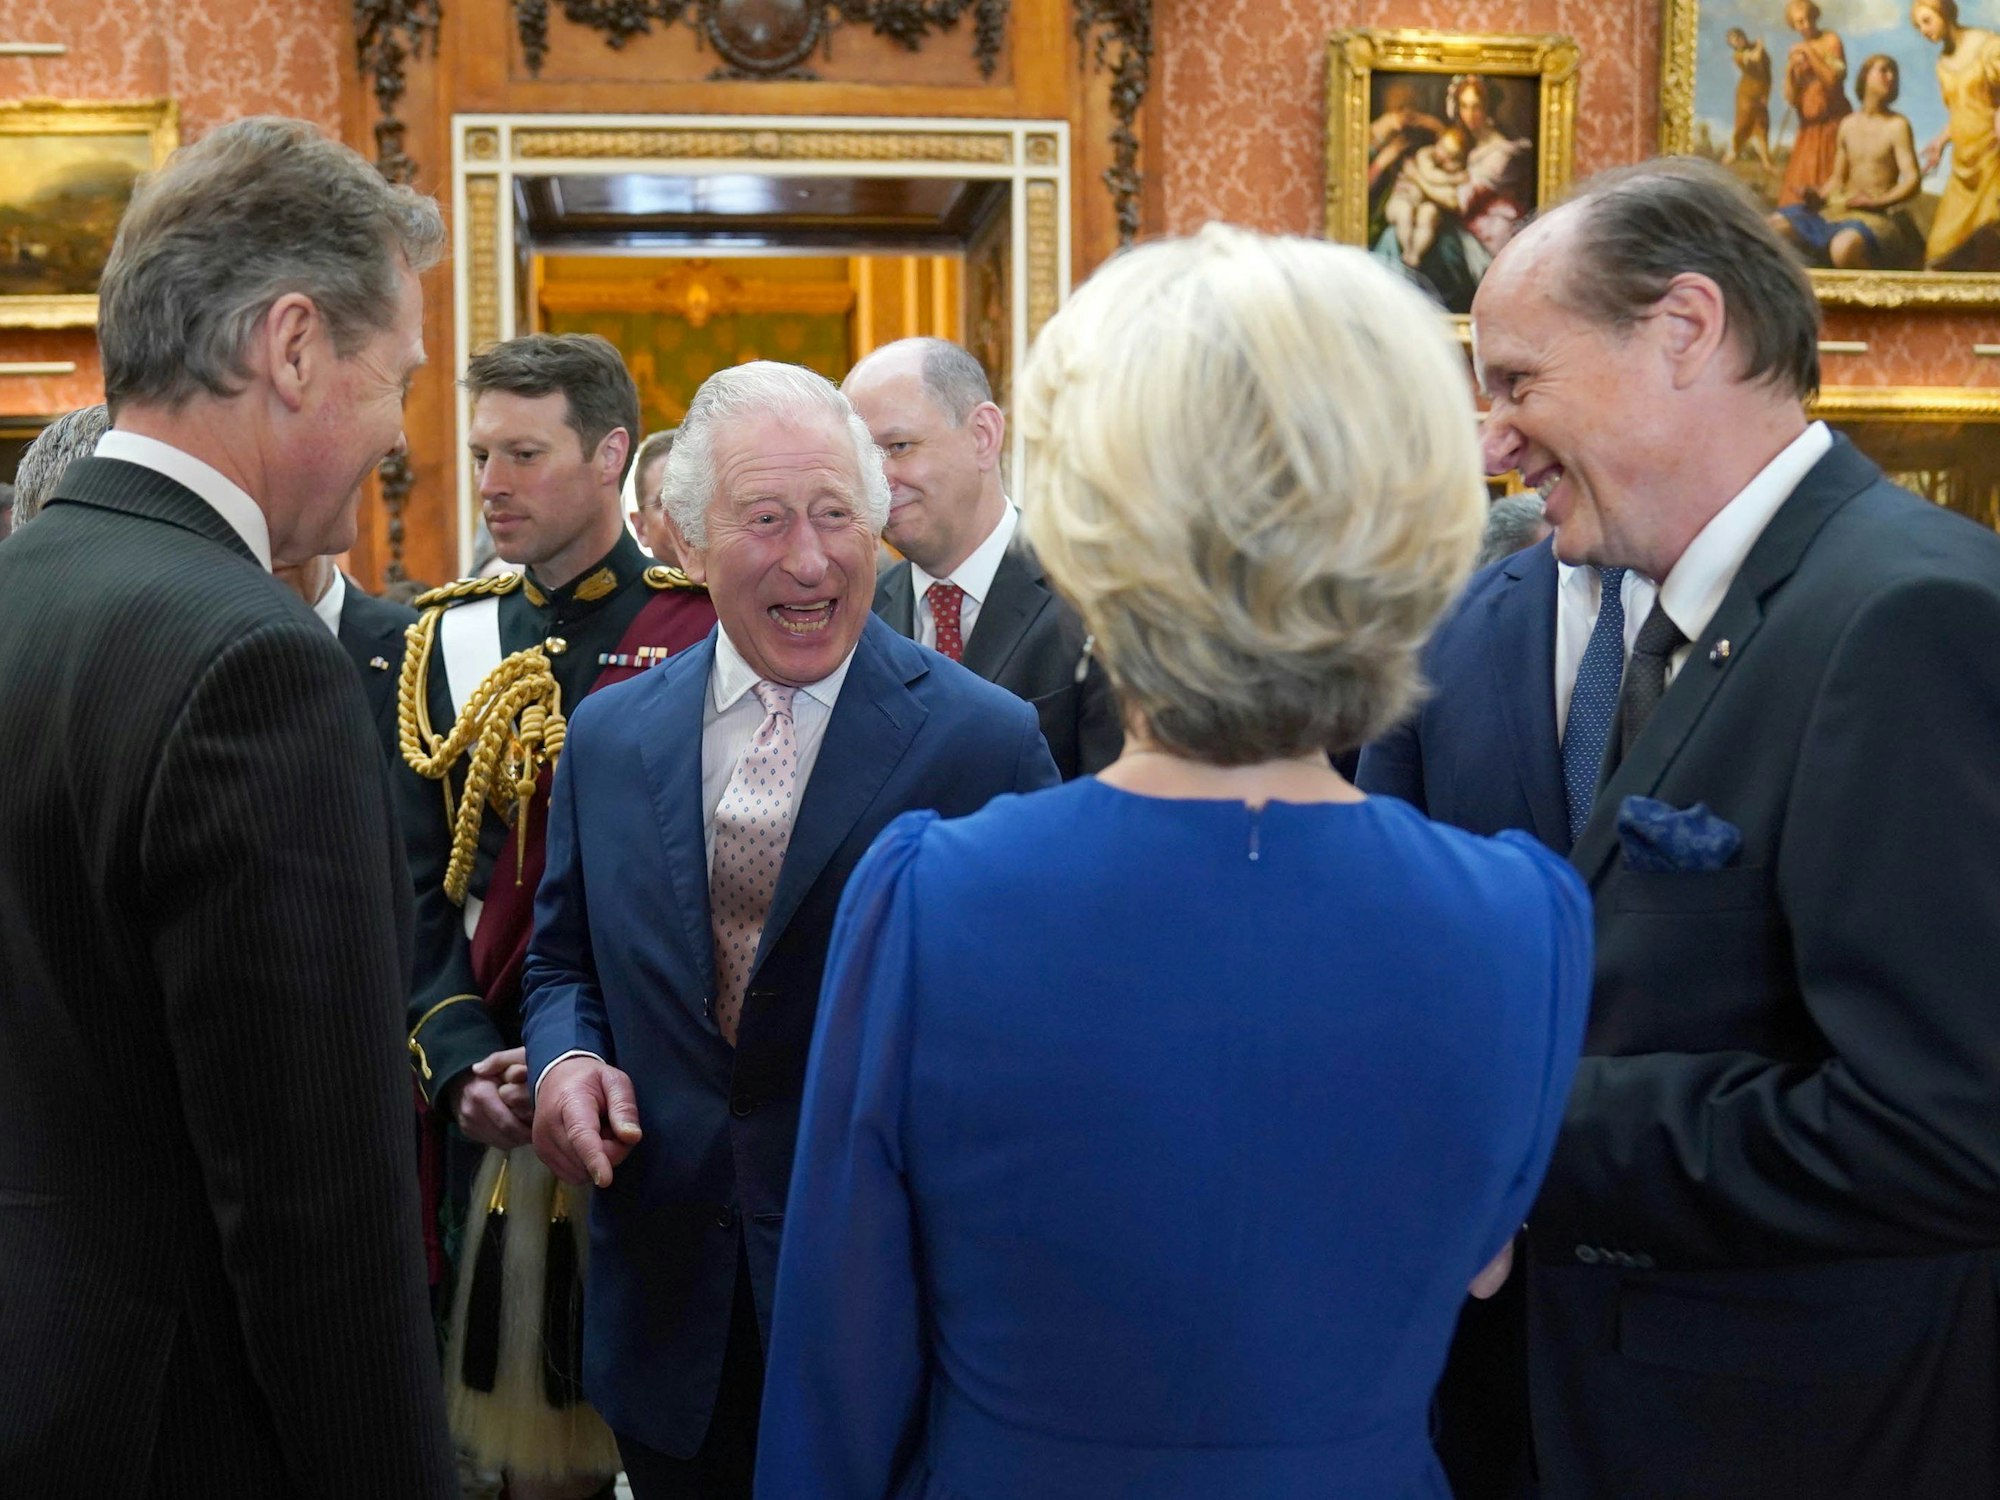 König Charles III. (2.v.l) von Großbritannien scherzt mit Ursula von der Leyen (vorne), Präsidentin der Europäischen Kommission, während eines Empfangs im Buckingham Palace für ausländische Gäste, die an seiner Krönung teilnehmen.